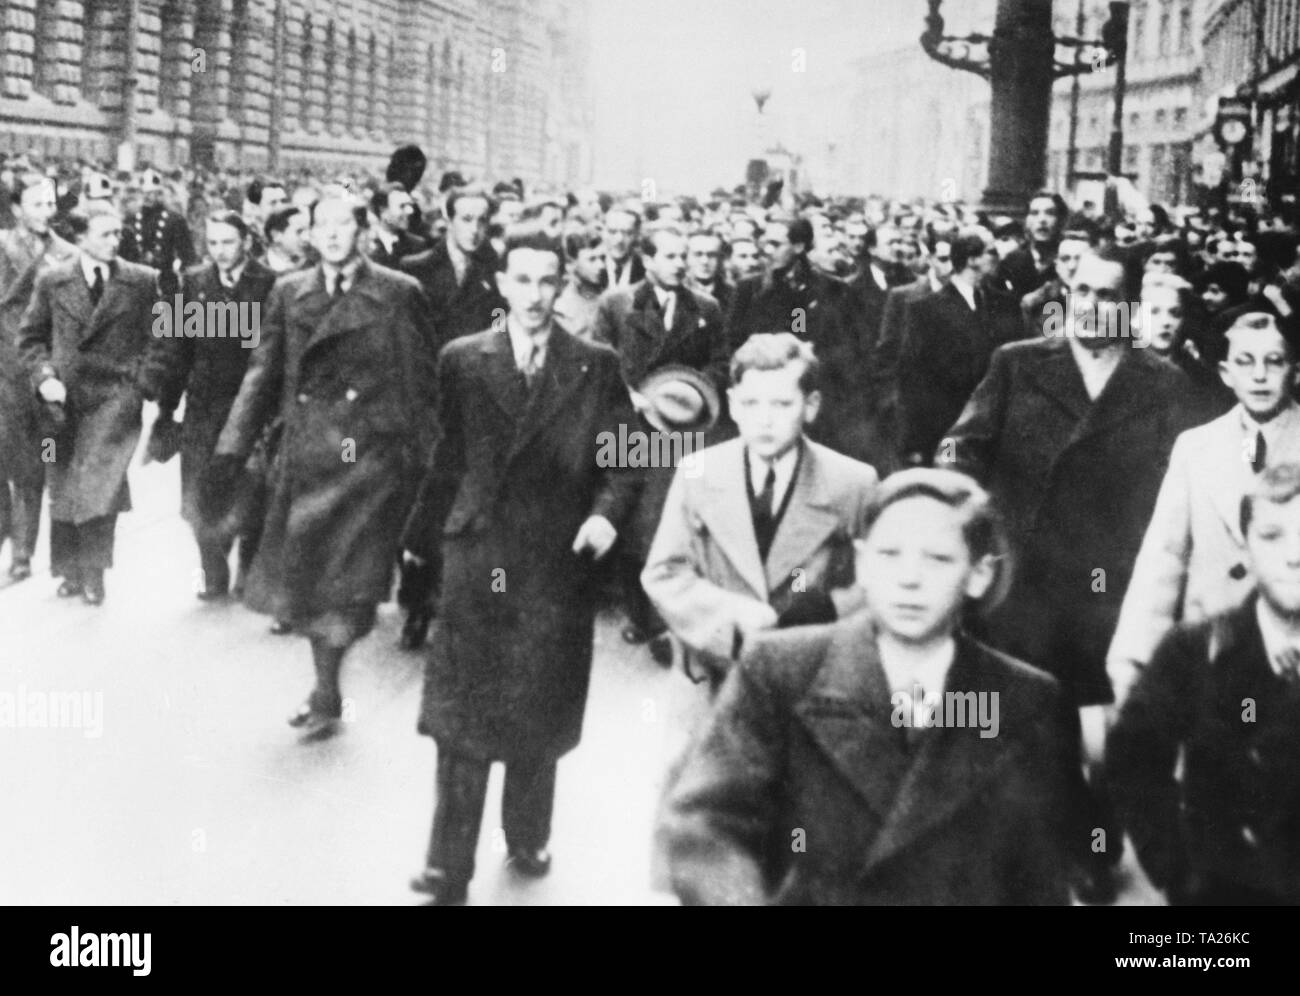 Gli studenti dimostrano contro la minoranza tedesca di fronte tedesco del Teatro Nazionale di Praga. Dal 1918, ci sono stati conflitti tra il Czechoslovaks e i Sudeti minoranza tedesca. Foto non datata, intorno al 1930. Foto Stock